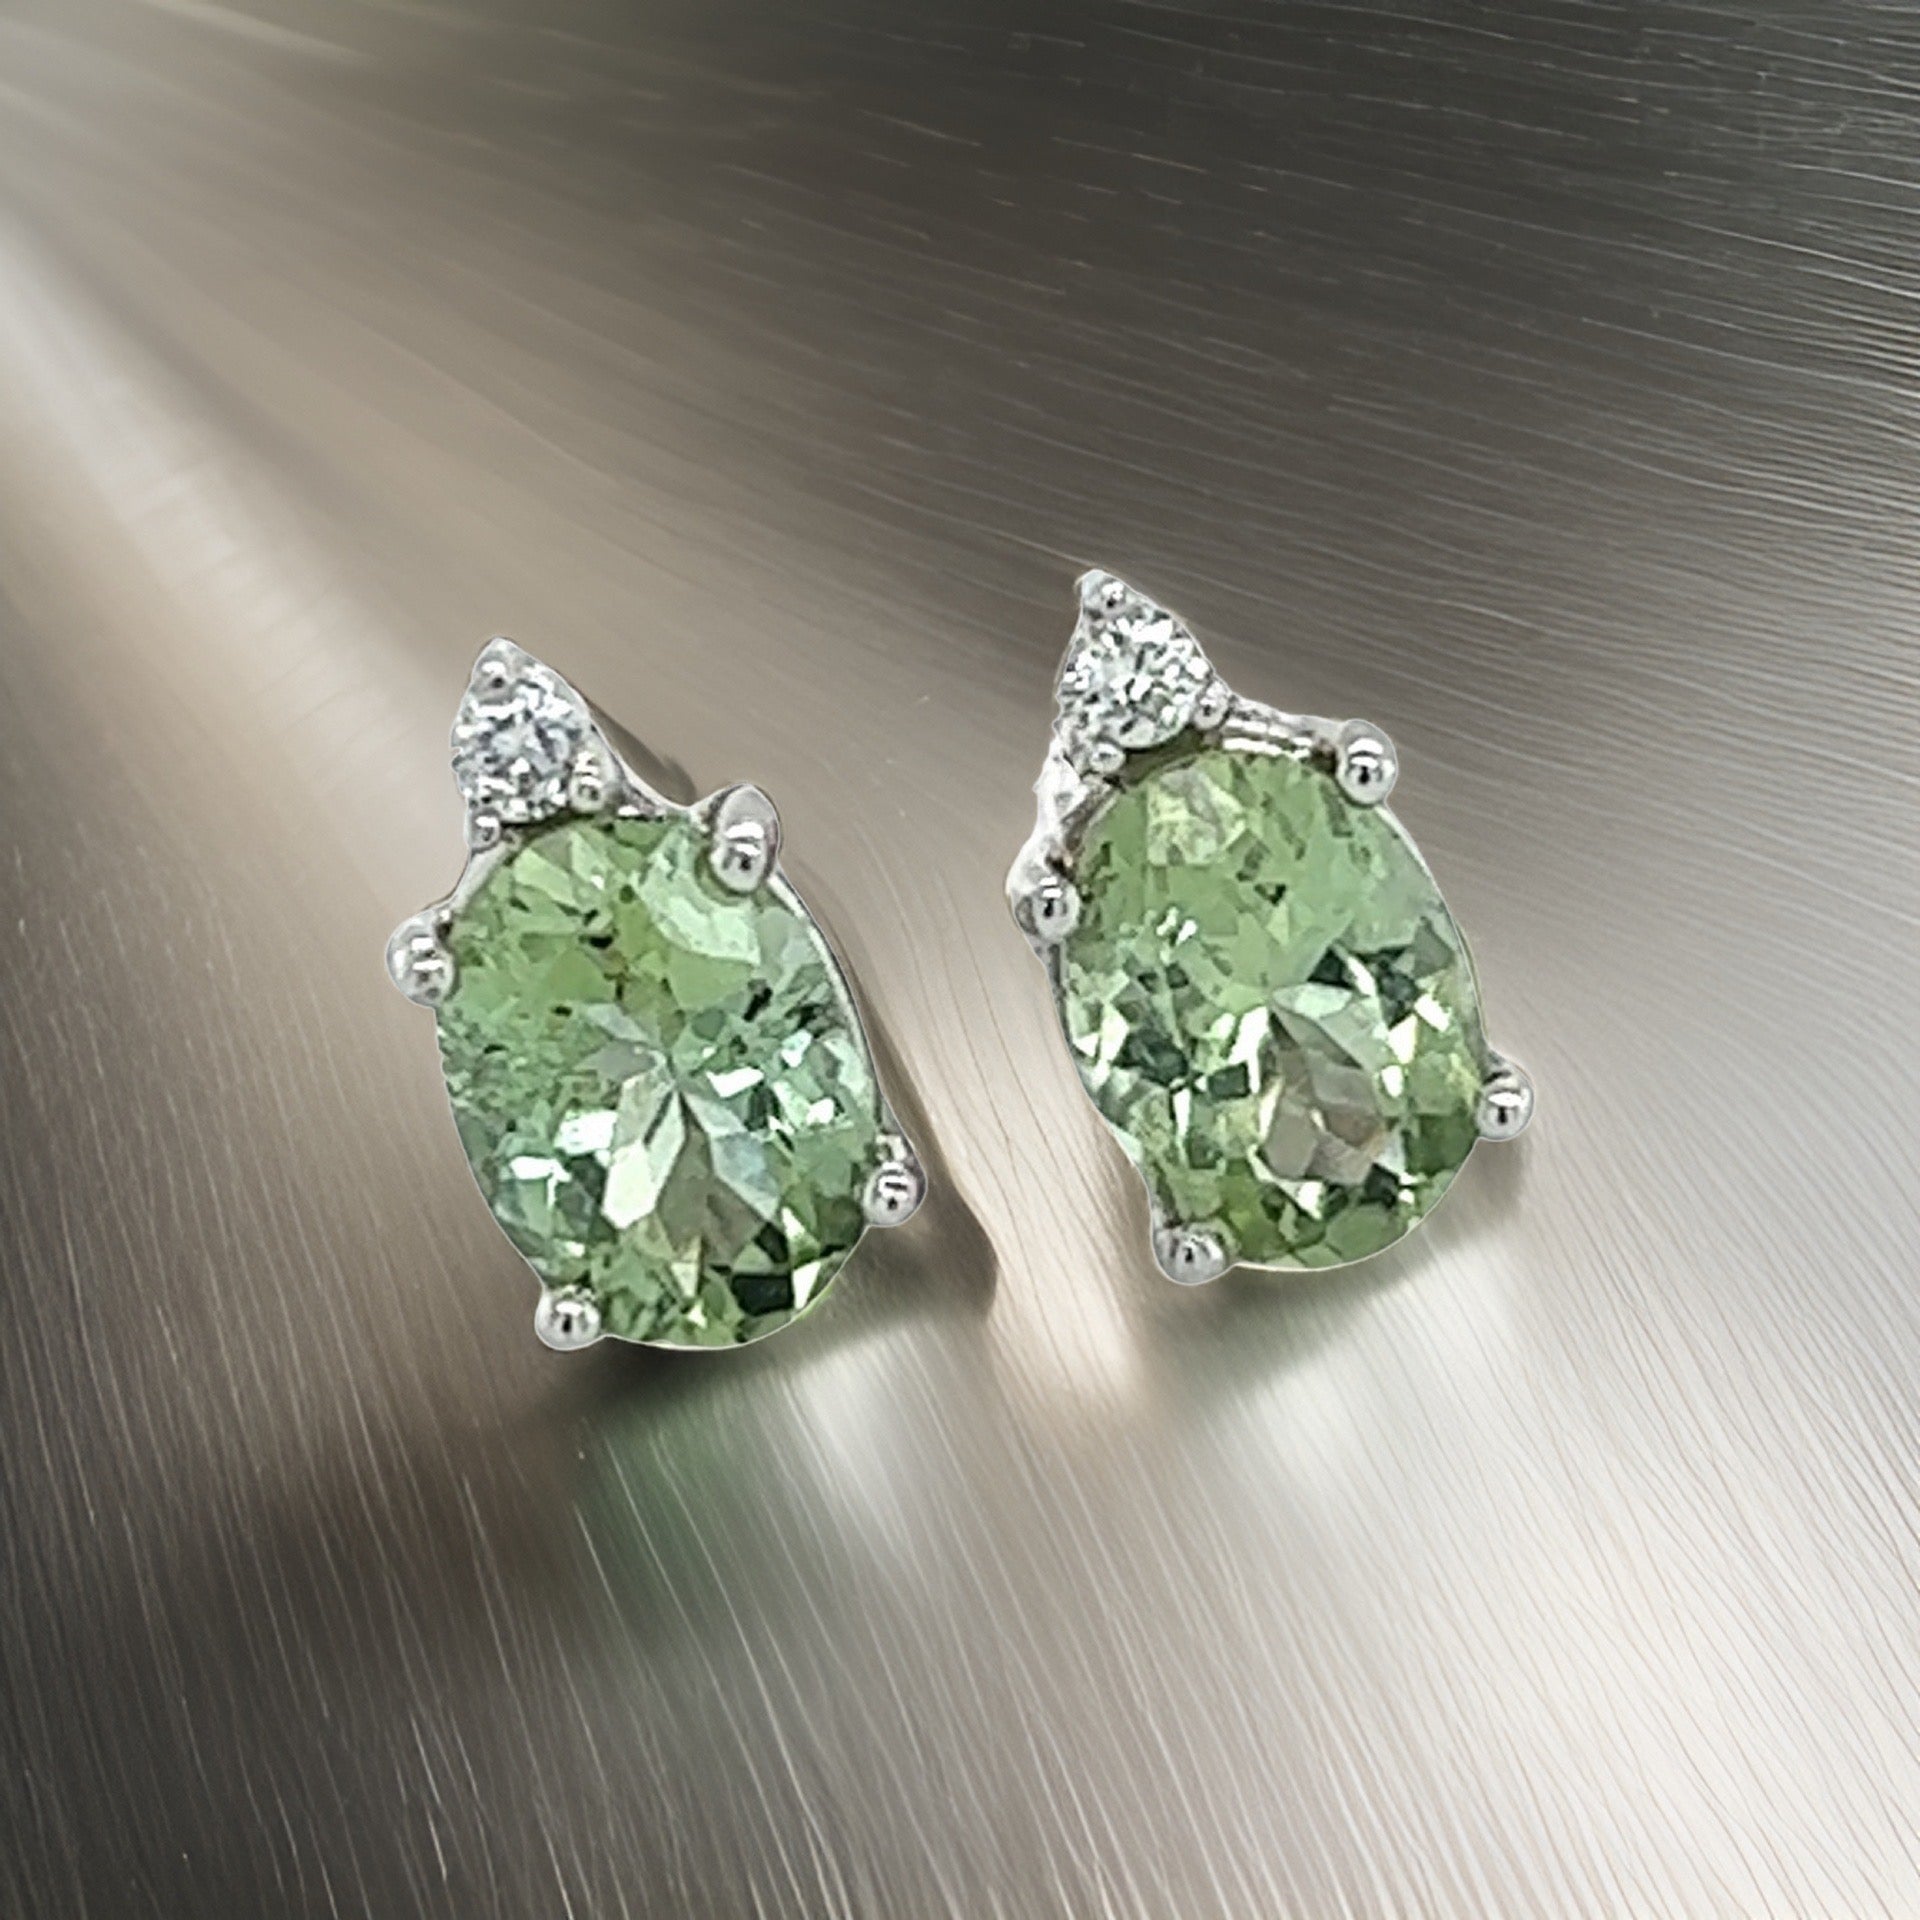 Natural Tourmaline Diamond Stud Earrings 14k Y Gold 1.76 TCW Certified $1,690 121433 - Certified Fine Jewelry